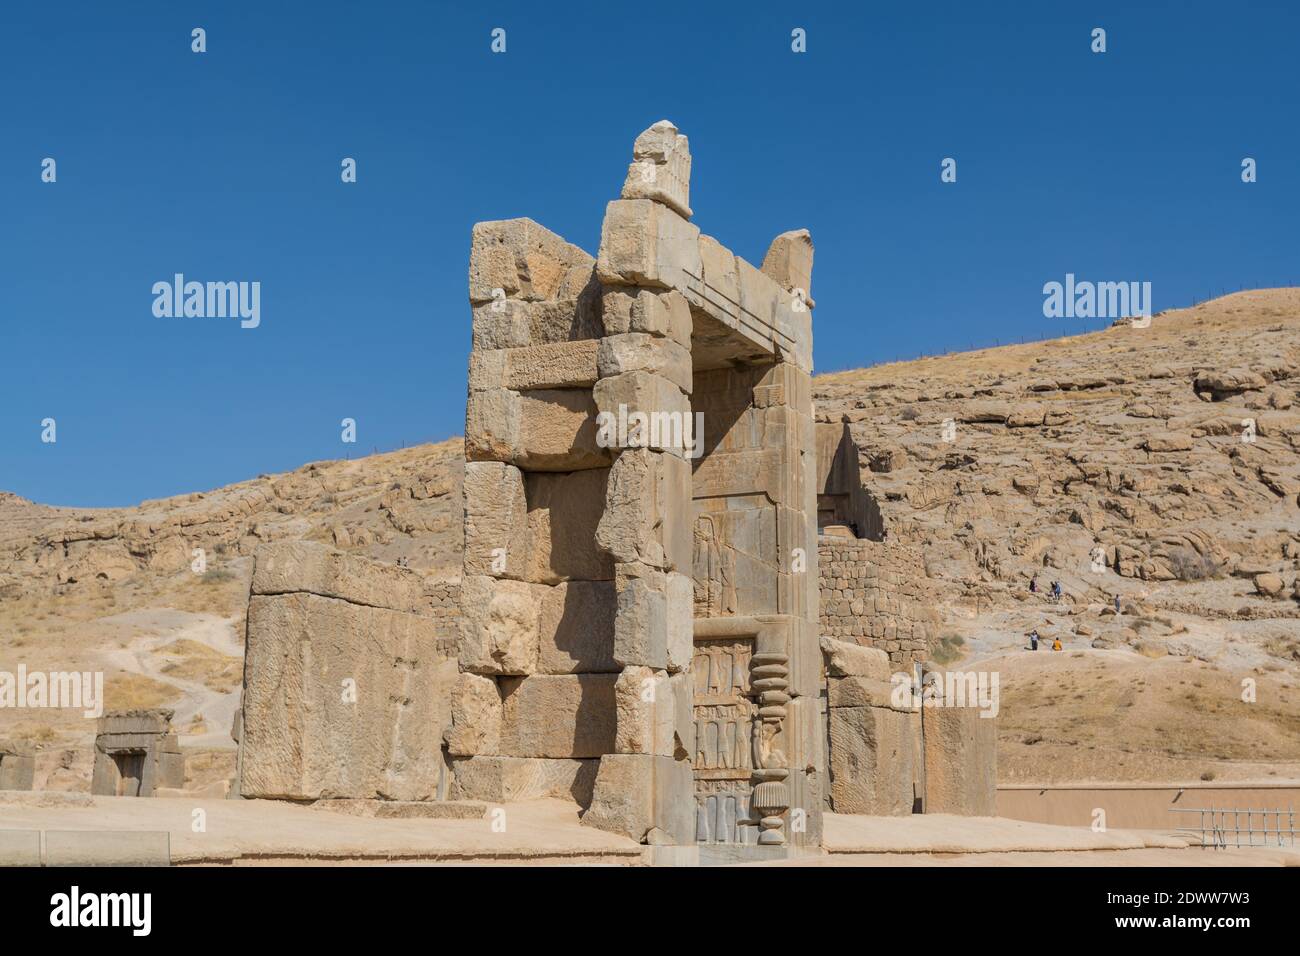 Rovine delle porte di pietra a Persepolis, la capitale cerimoniale dell'Impero achemenide, l'UNESCO ha dichiarato le rovine di Persepolis un sito patrimonio dell'umanità Foto Stock